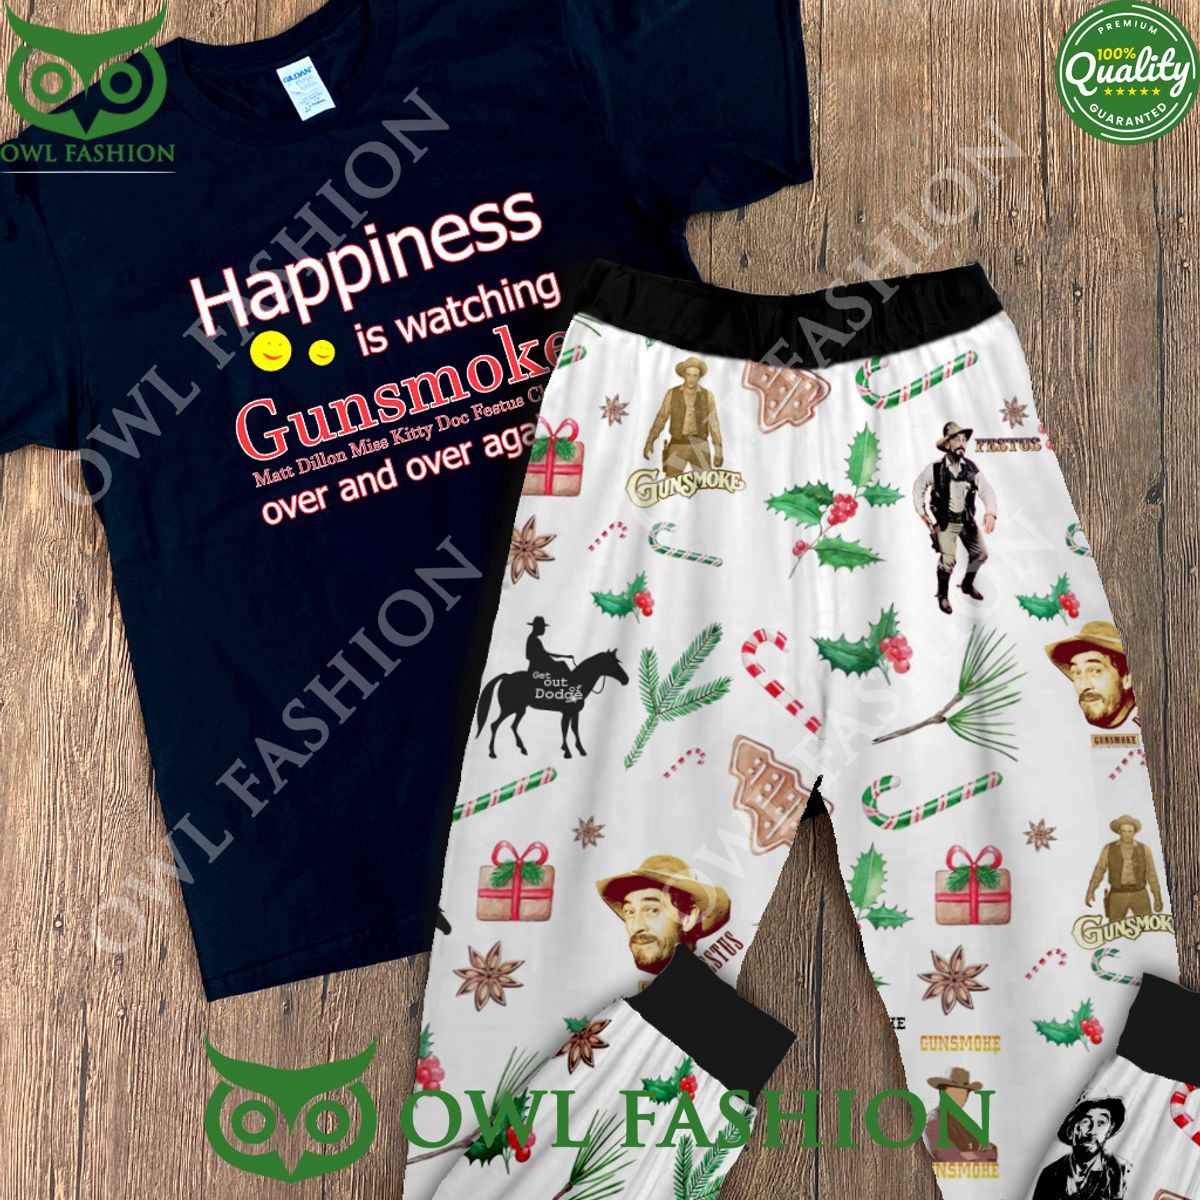 gunsmoke pajamas for gifts holiday pajamas 1 RAHei.jpg